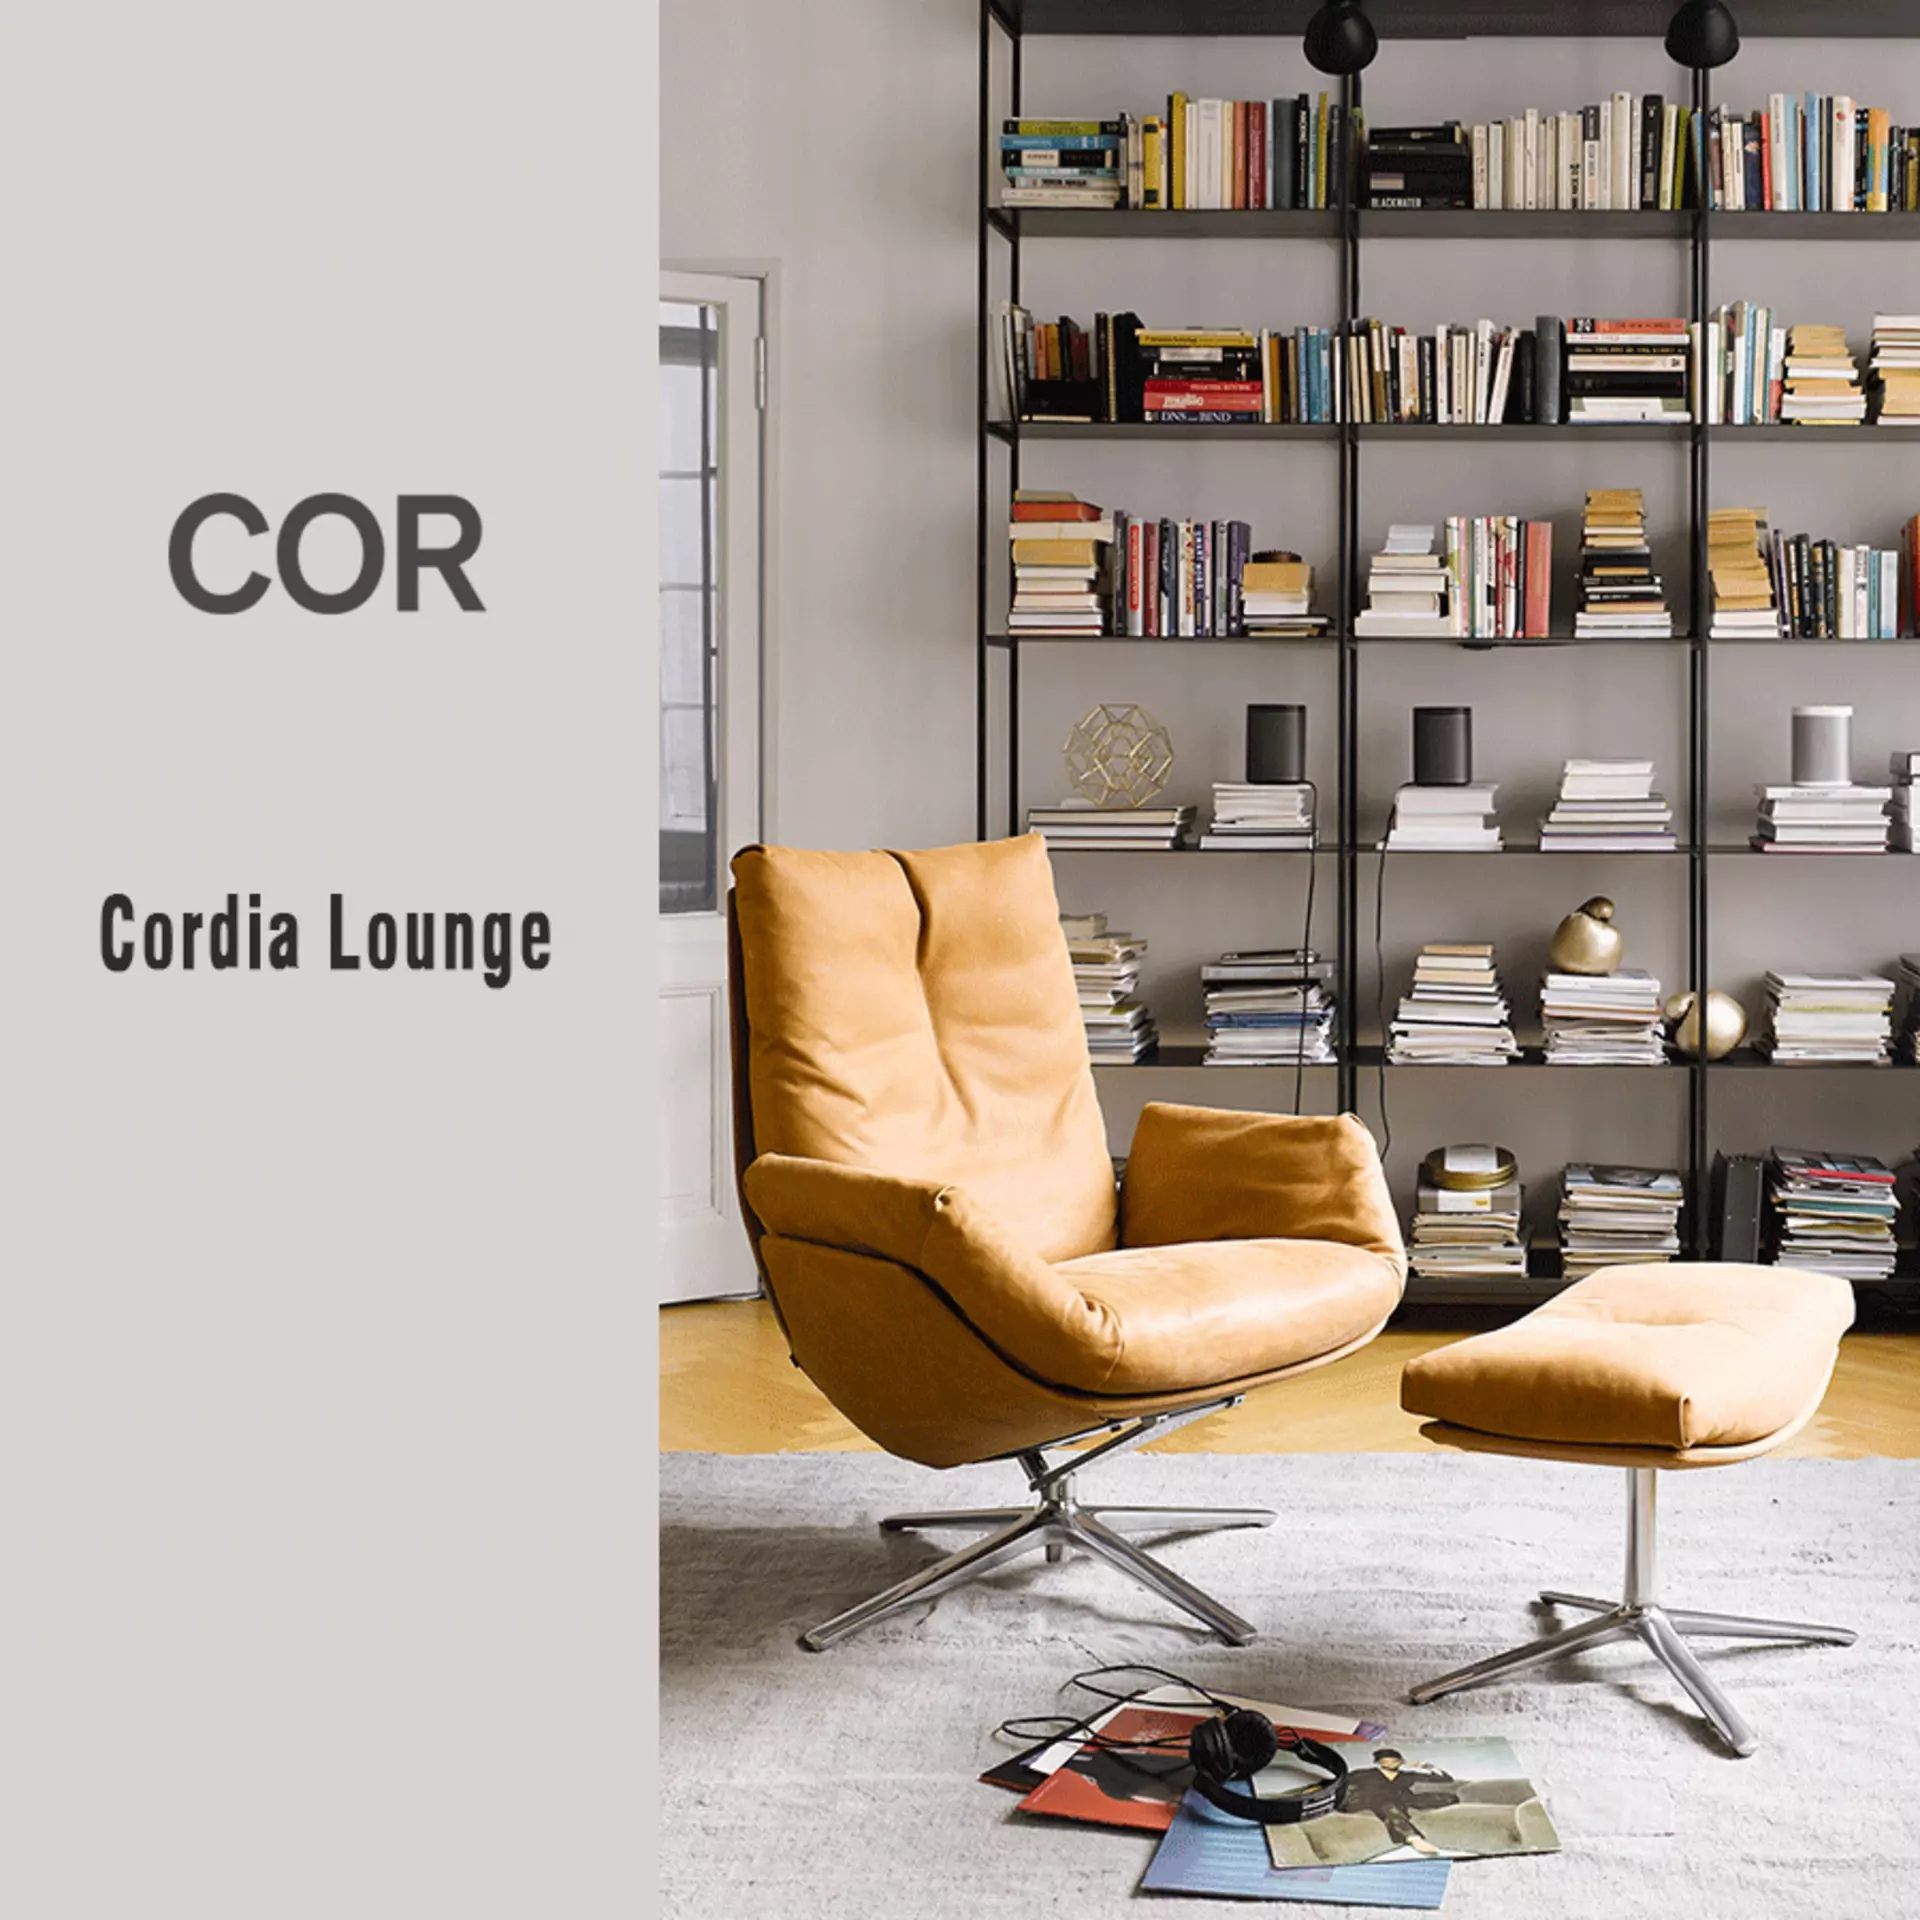 Aktion: Der Cordia Lounge von COR